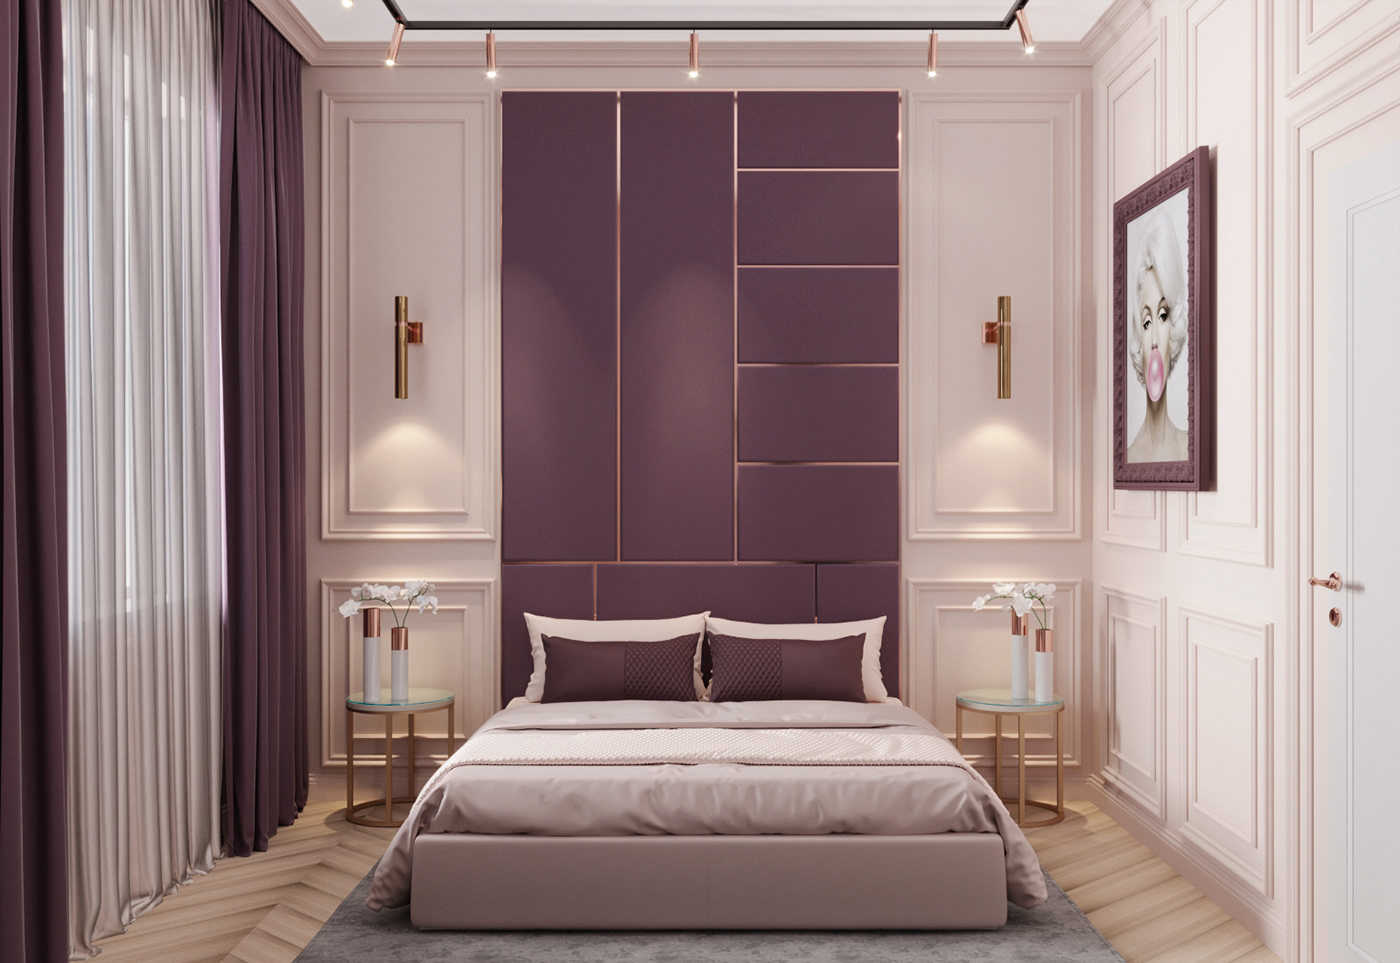 Trang trí phòng ngủ màu tím đậm là một lựa chọn táo bạo và cá tính